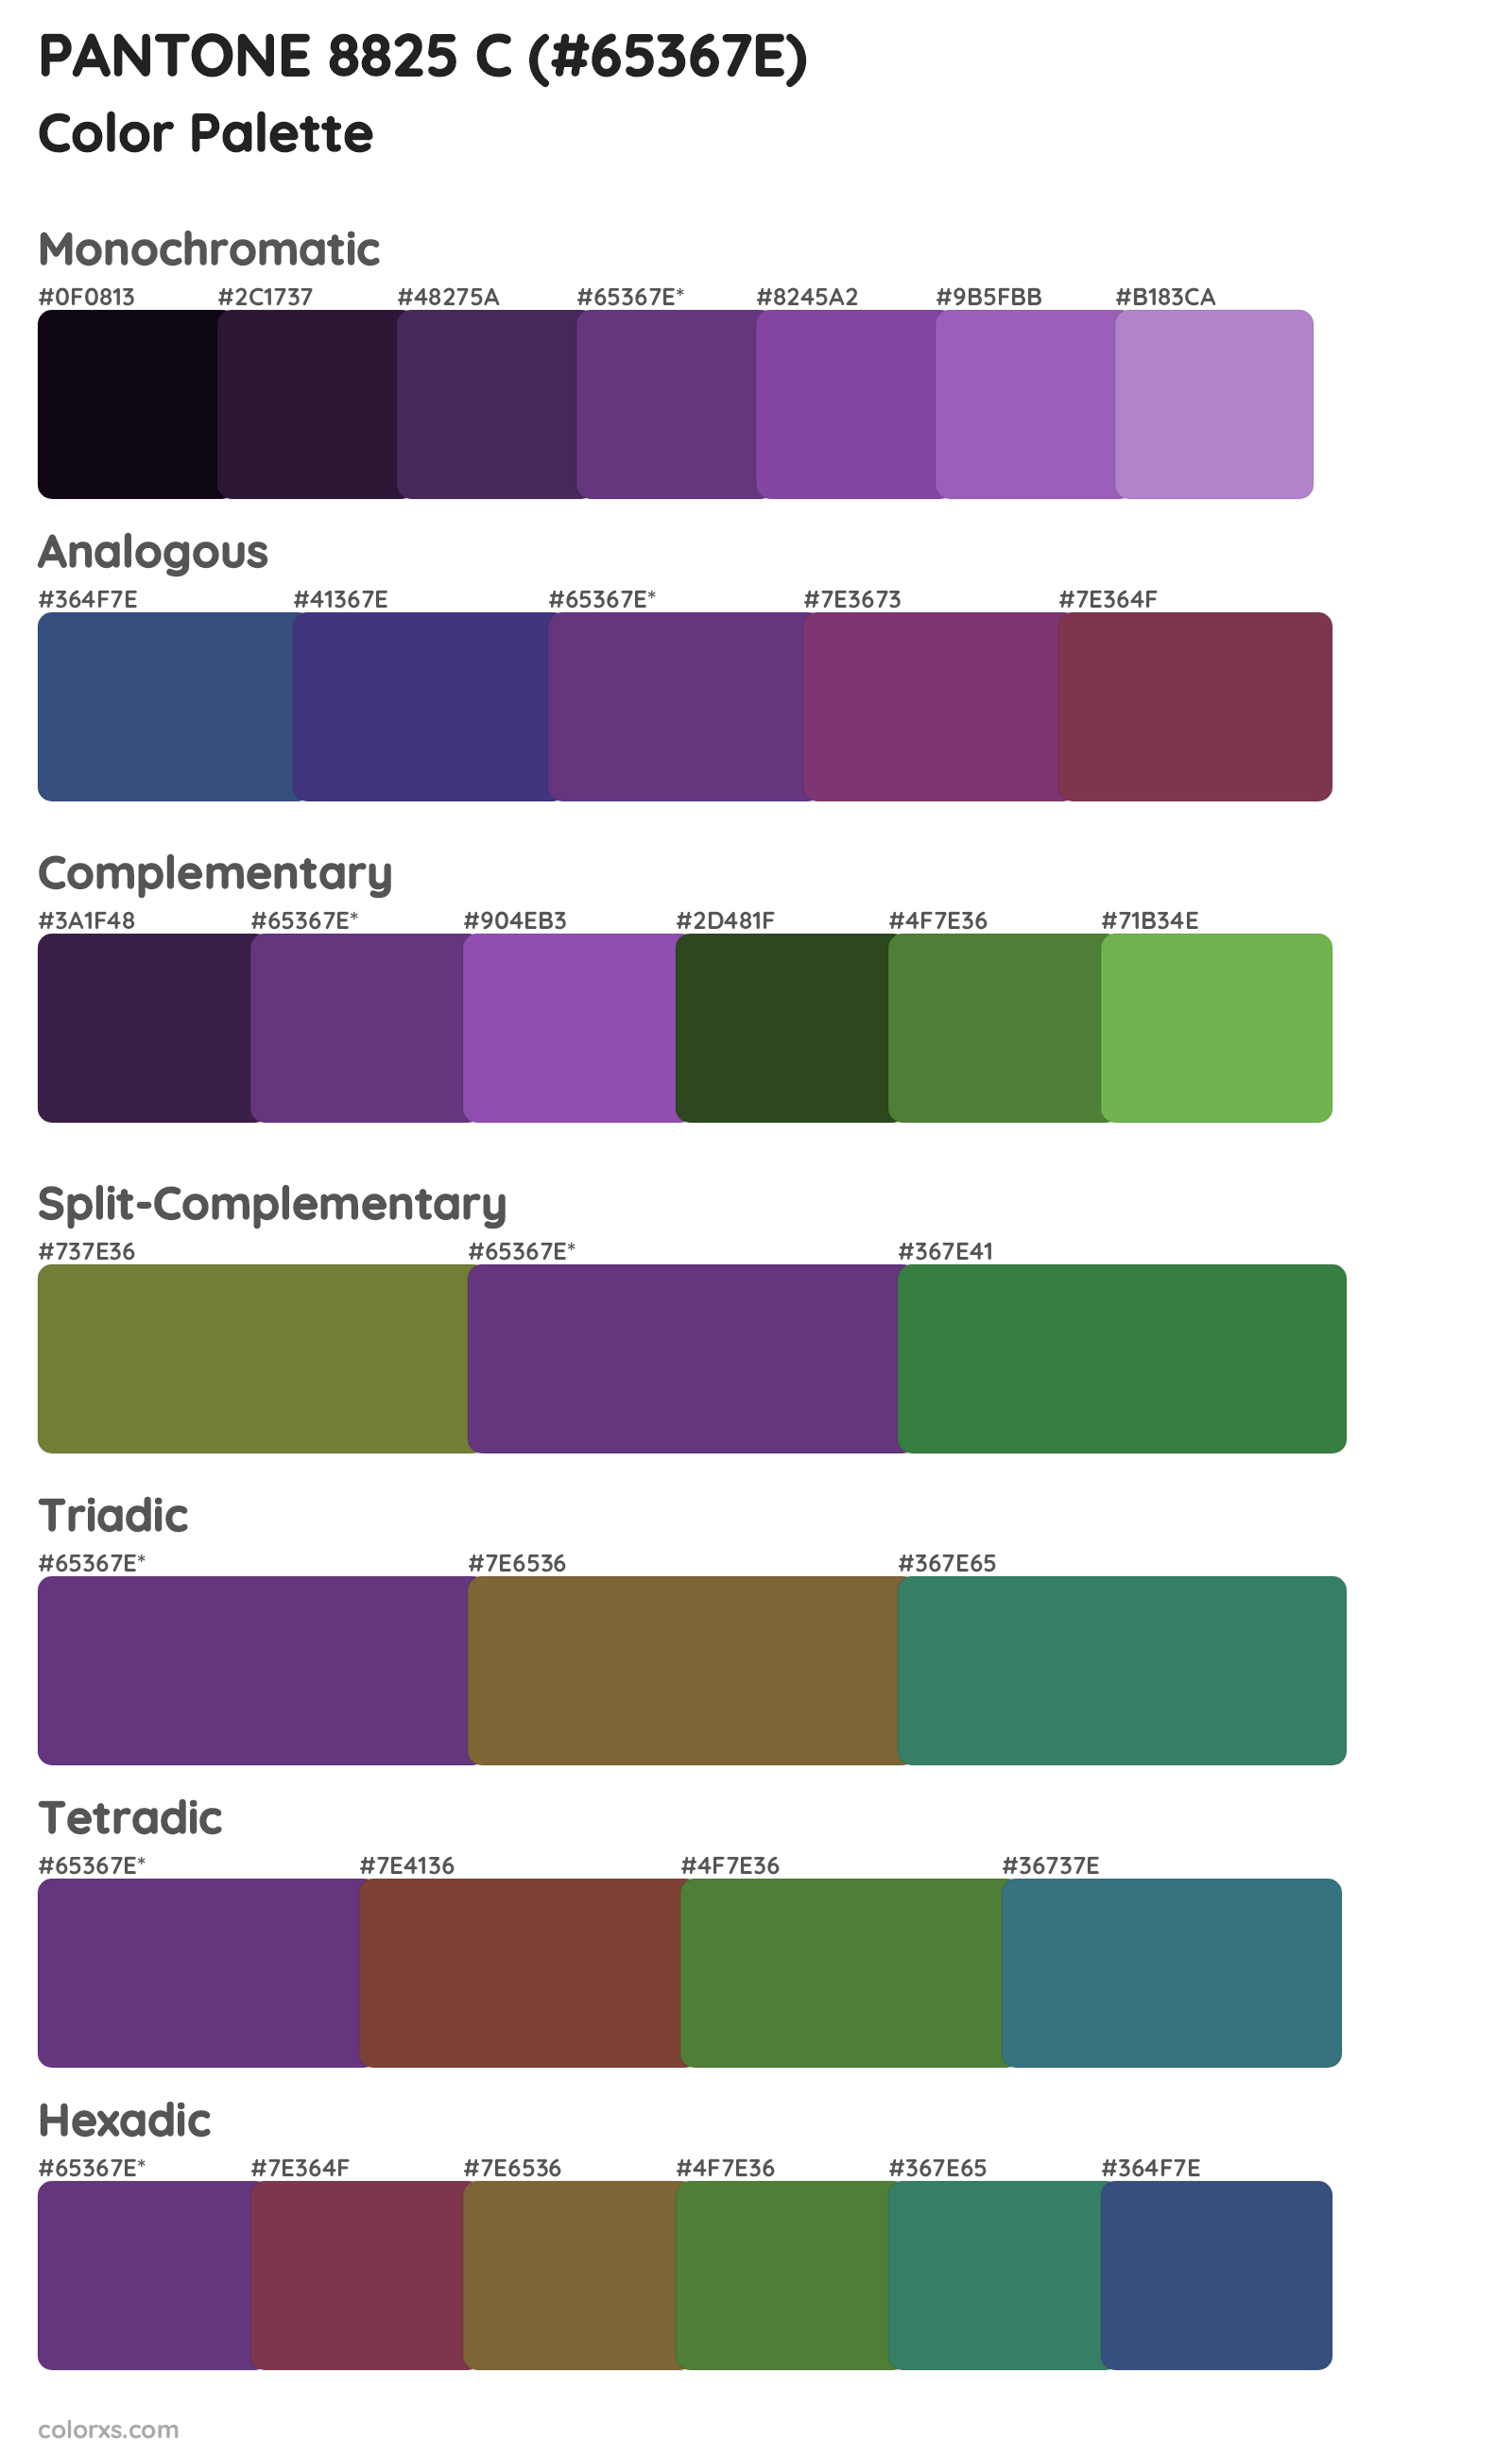 PANTONE 8825 C Color Scheme Palettes